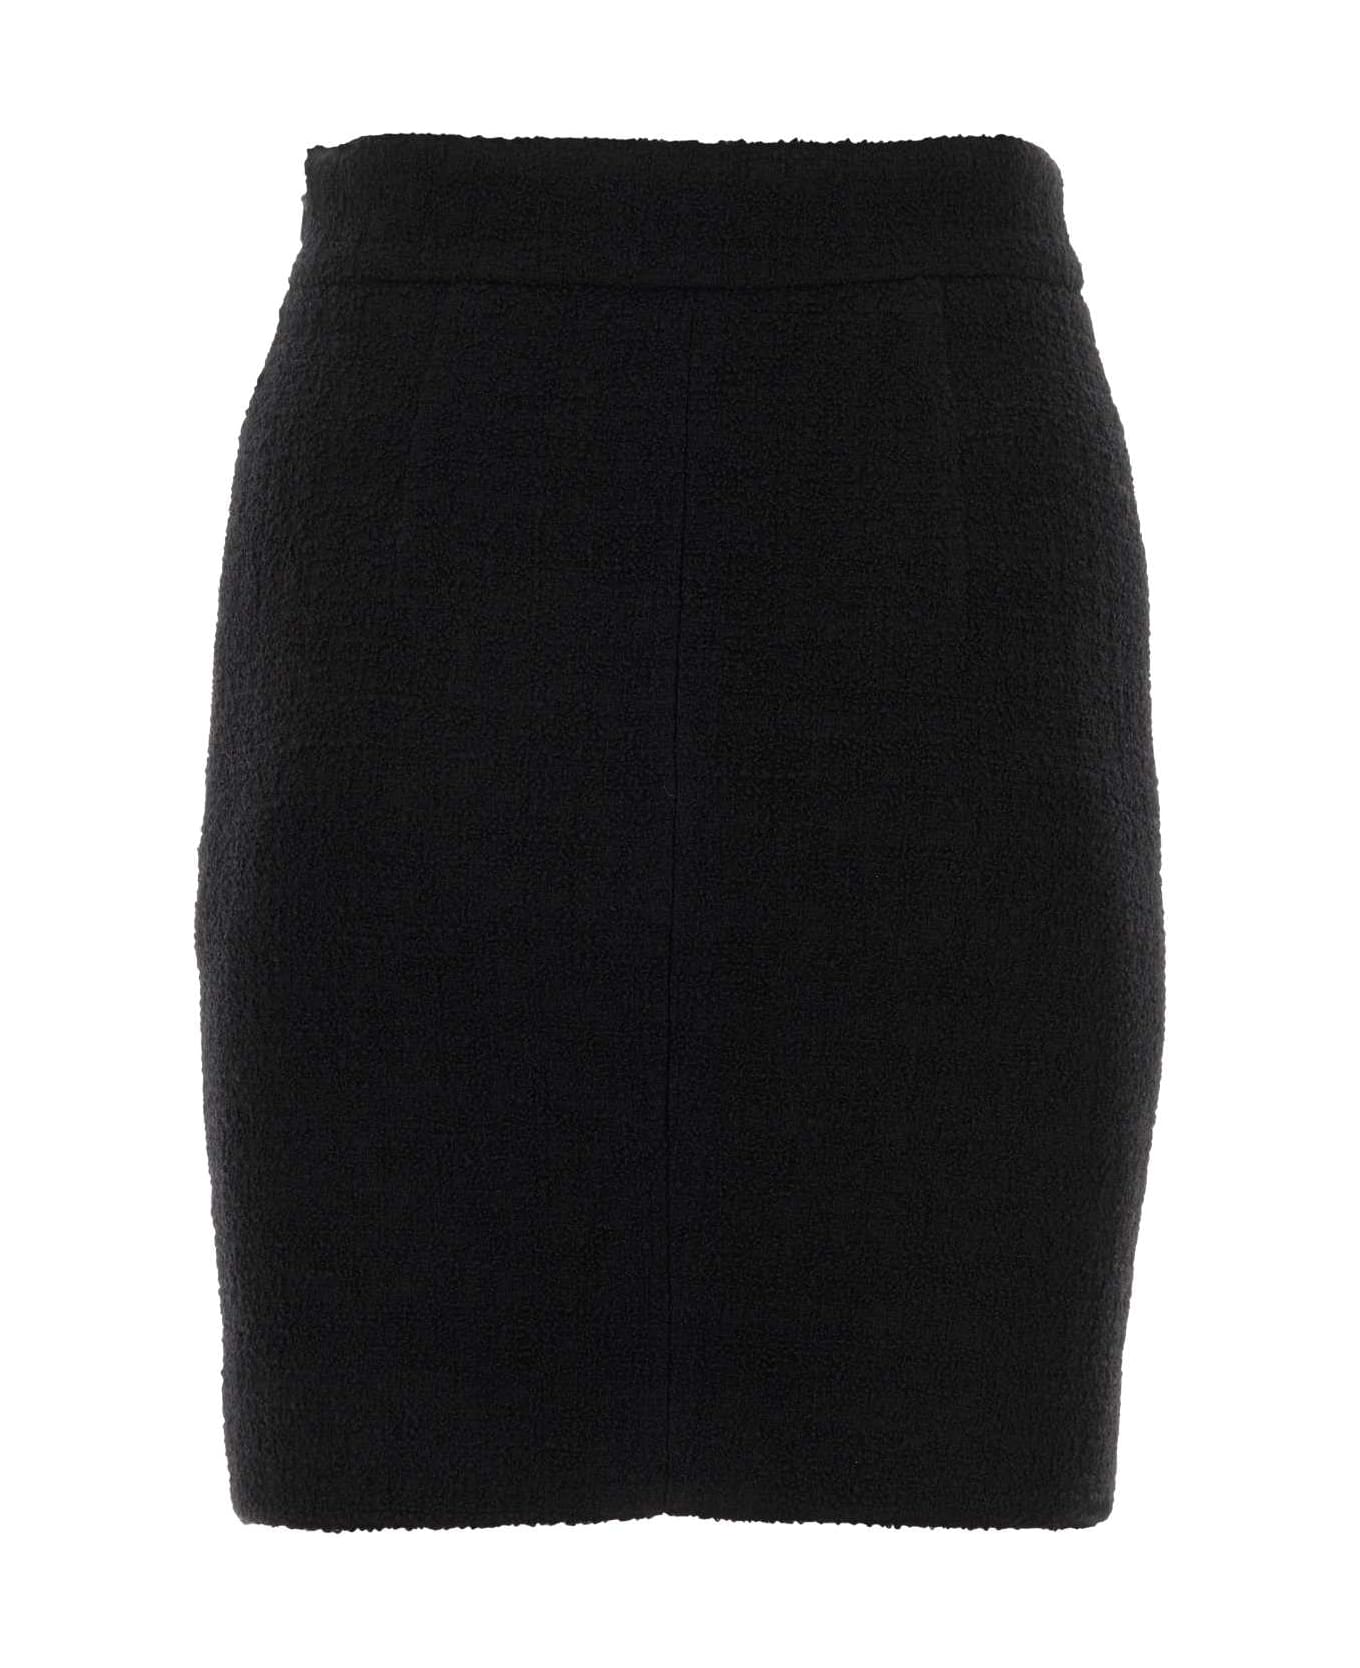 Moschino Black Wool Blend Miniskirt - NERO